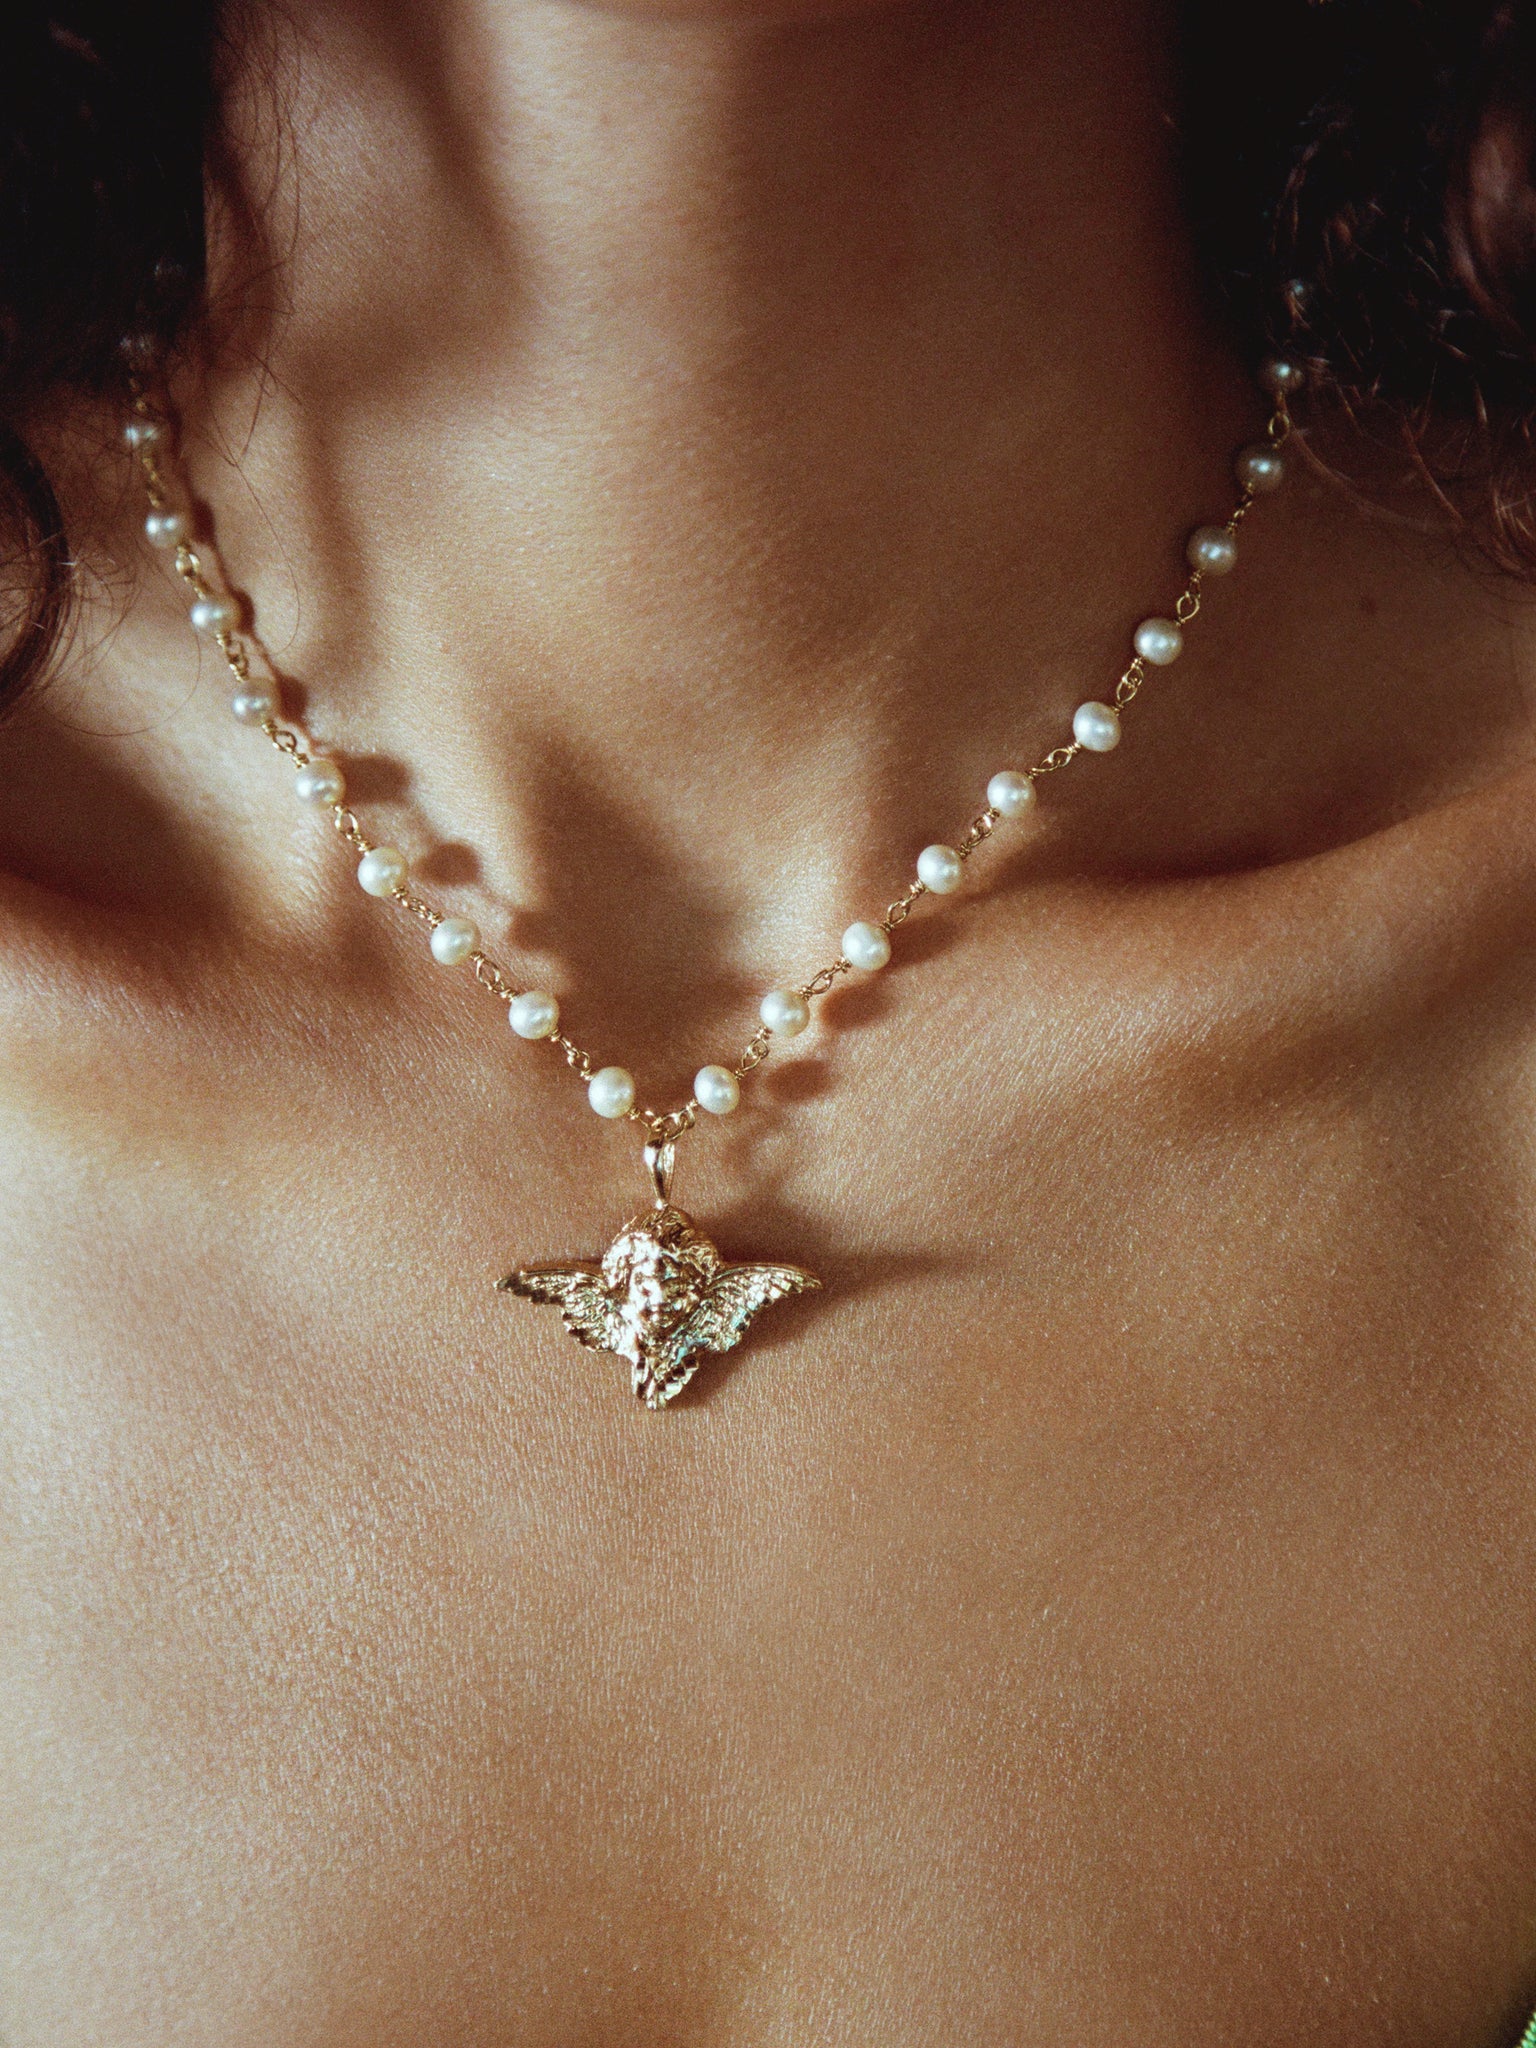 The Cherub Pearl Necklace